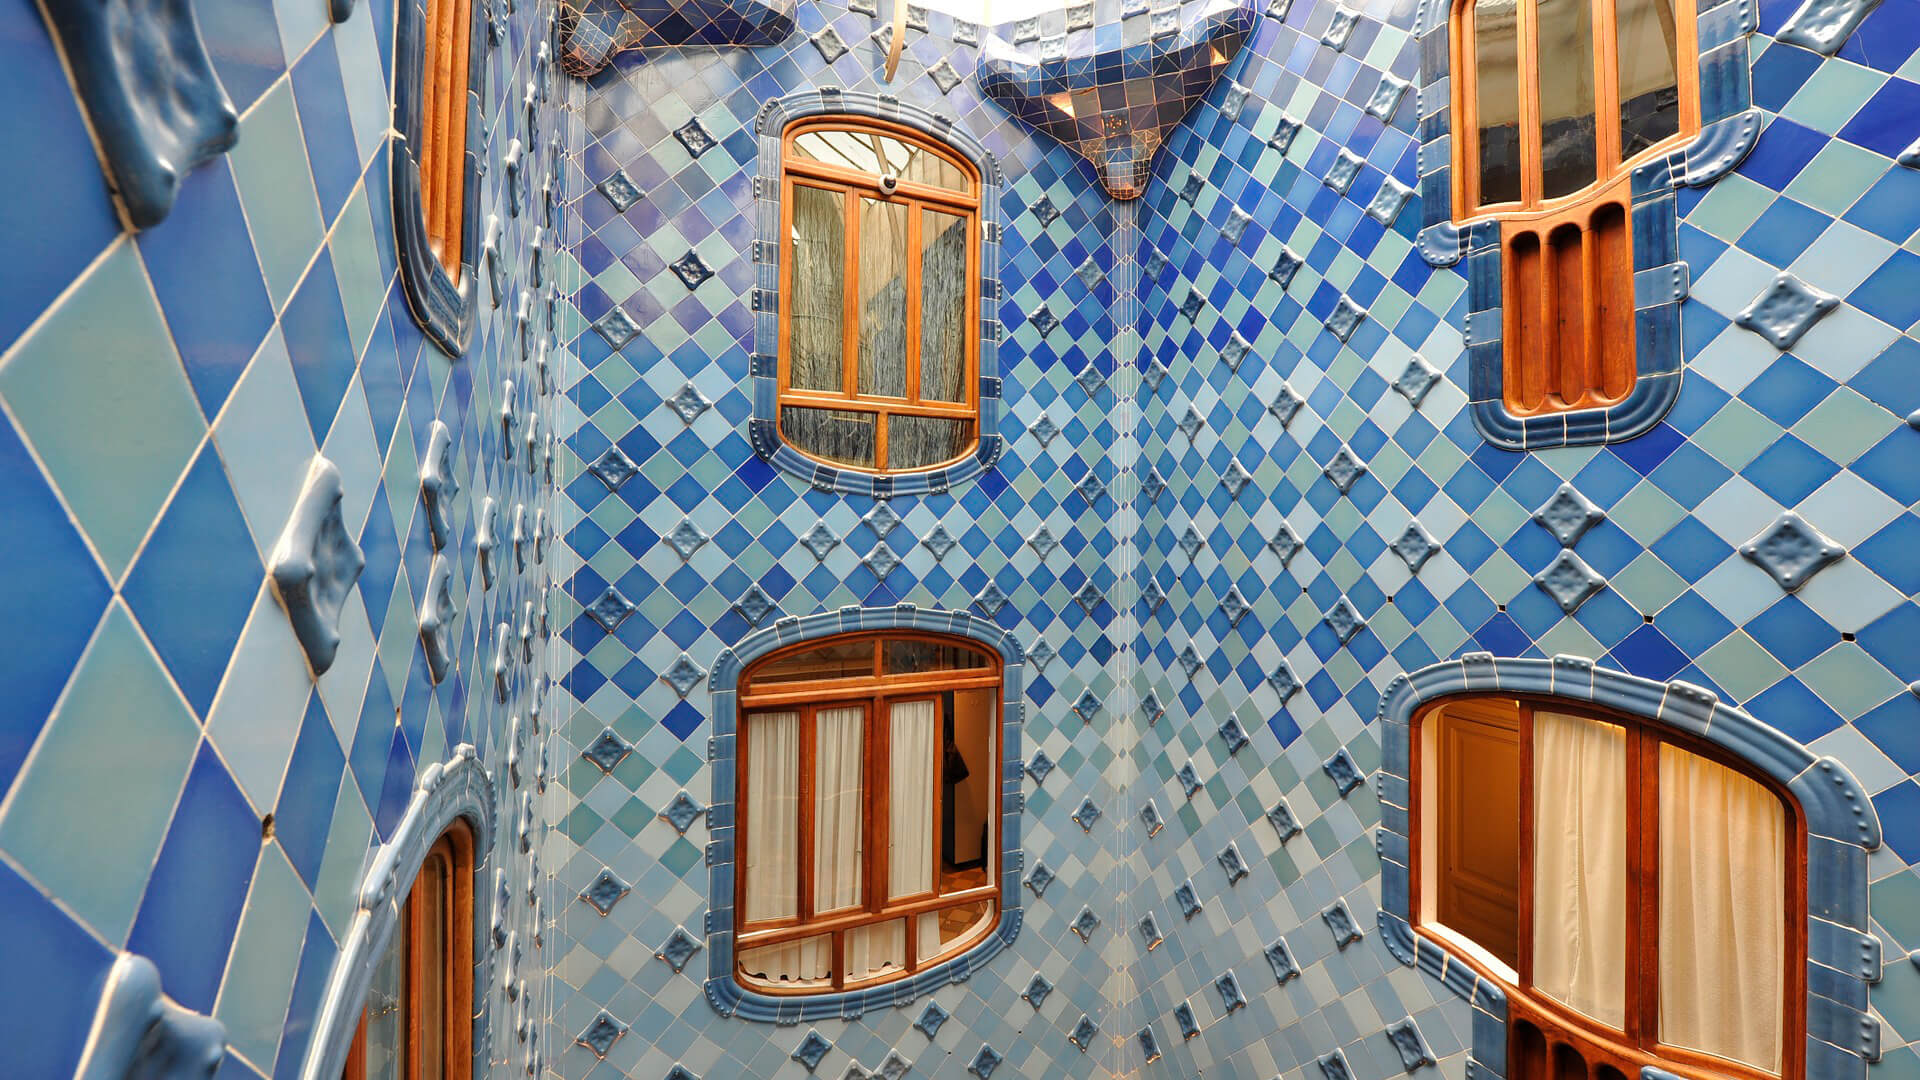 Casa Batlló on Passeig de Gracia